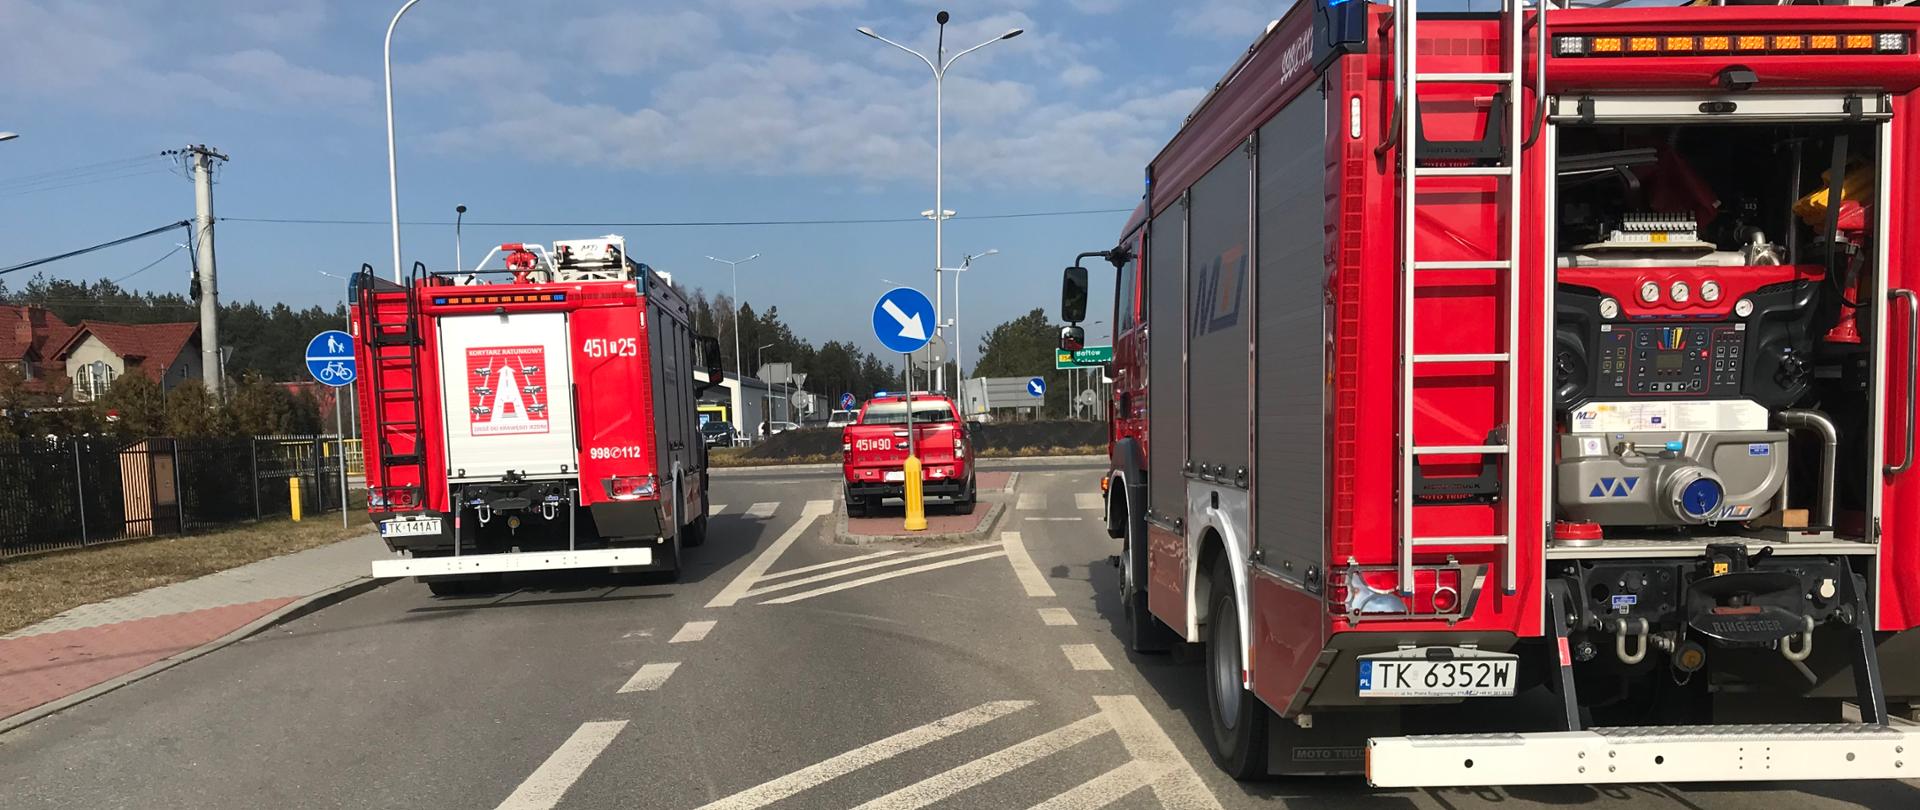 Na zdjęciu widać trzy samochody strażackie zaparkowane na ulicy Samsonowicza w Ostrowcu Św. Zdjęcie wykonane w porze dziennej. Droga jest zablokowana przez samochody strażackie. Miejsce wykonania zdjęcia znajduje się w pobliżu wycieku po prawej stronie.